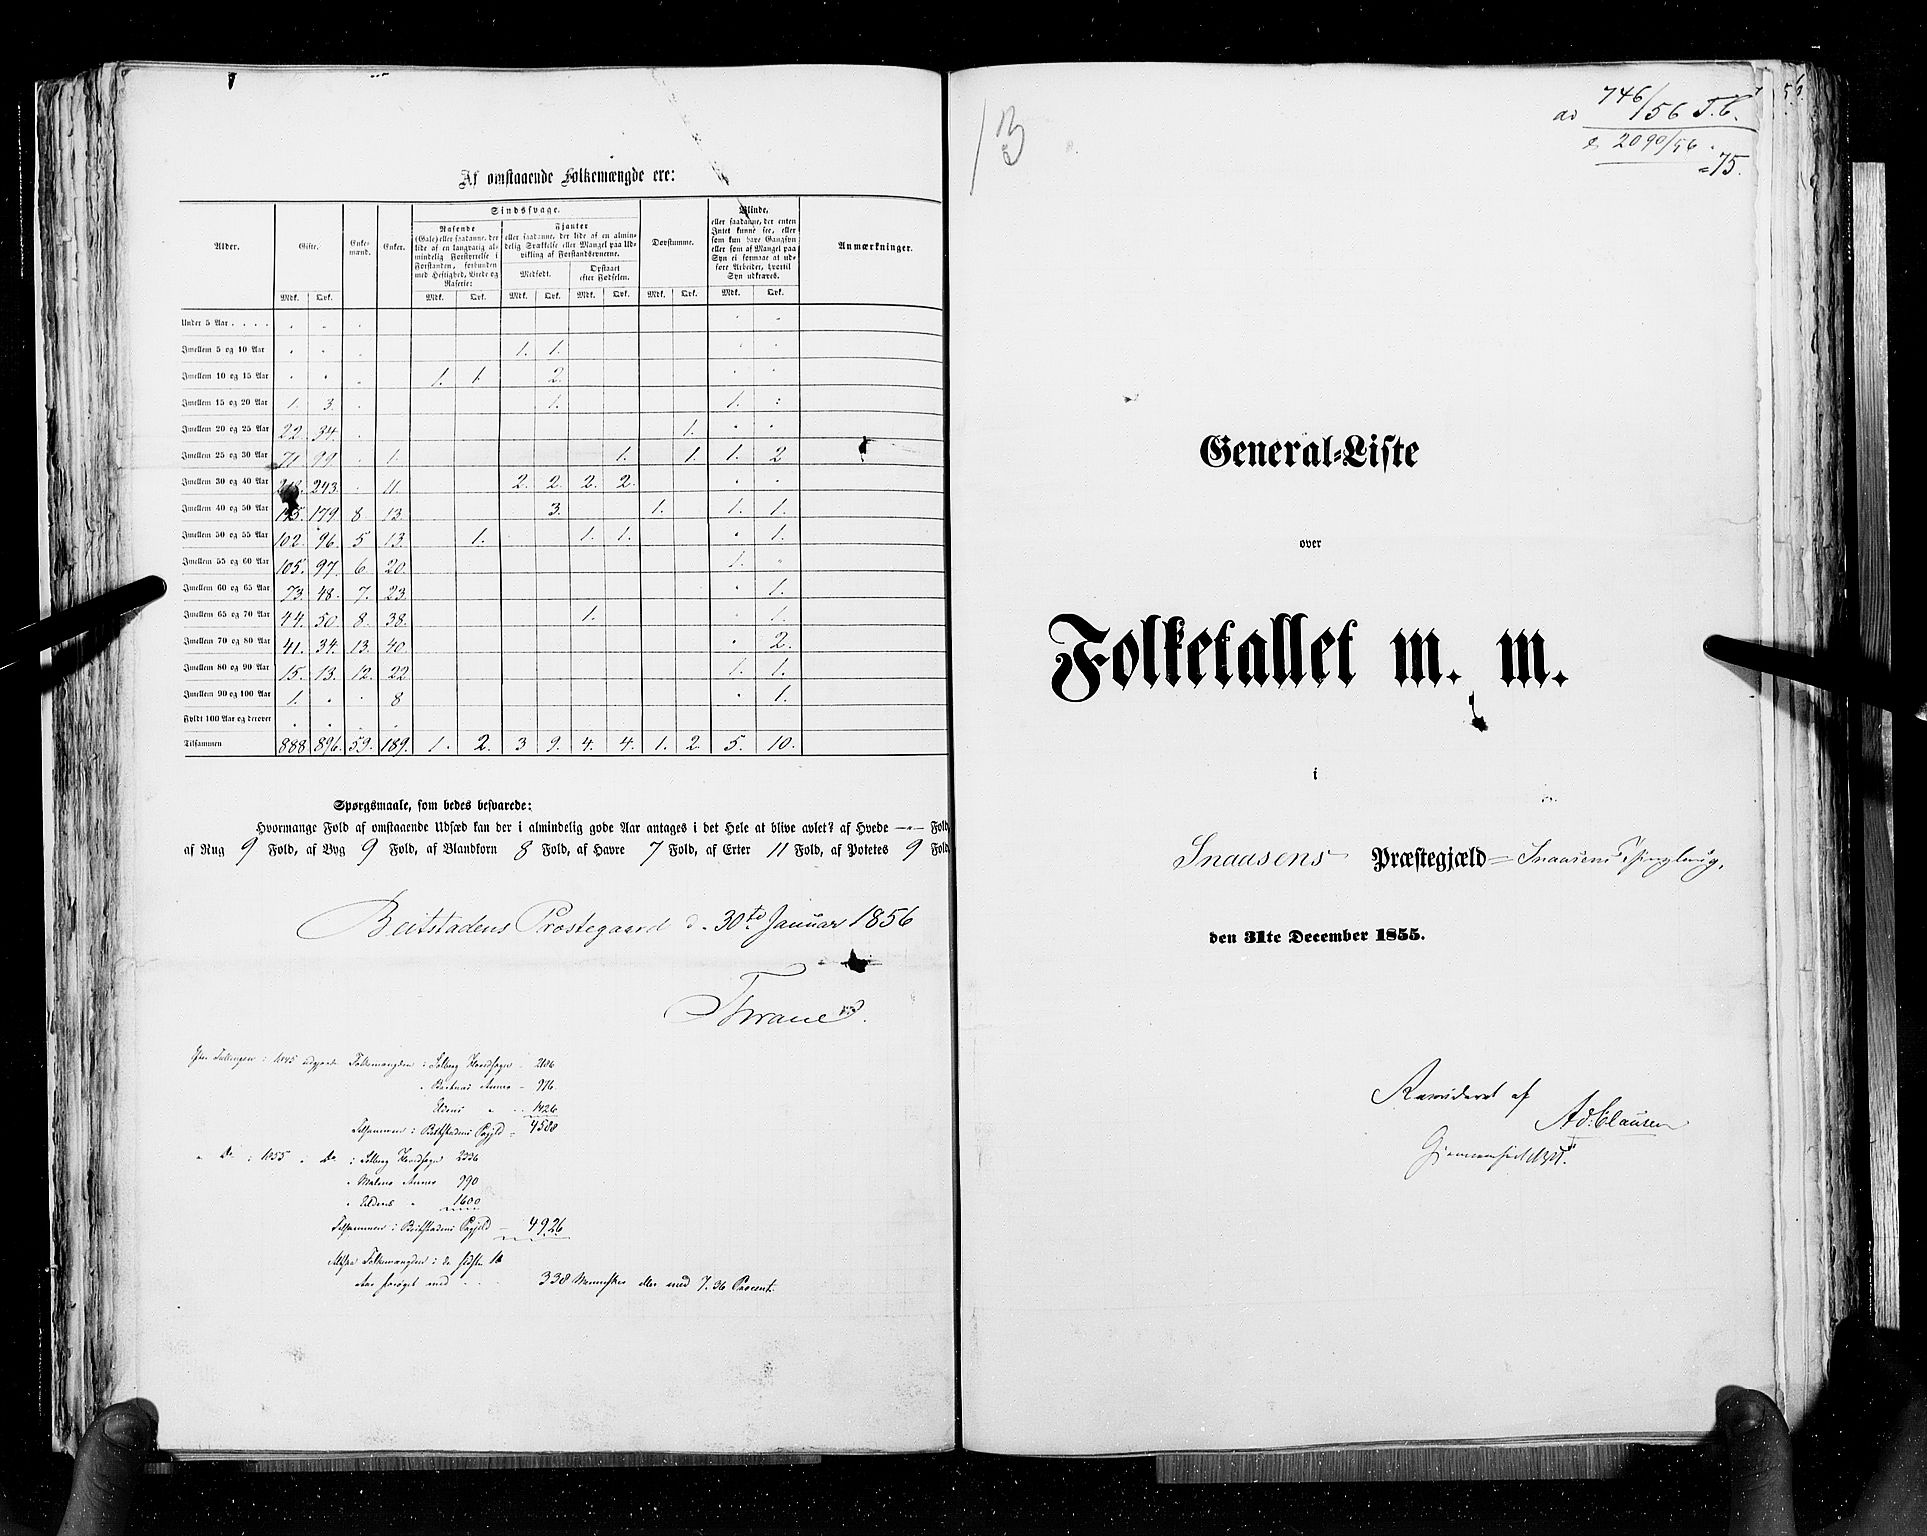 RA, Census 1855, vol. 6A: Nordre Trondhjem amt og Nordland amt, 1855, p. 75